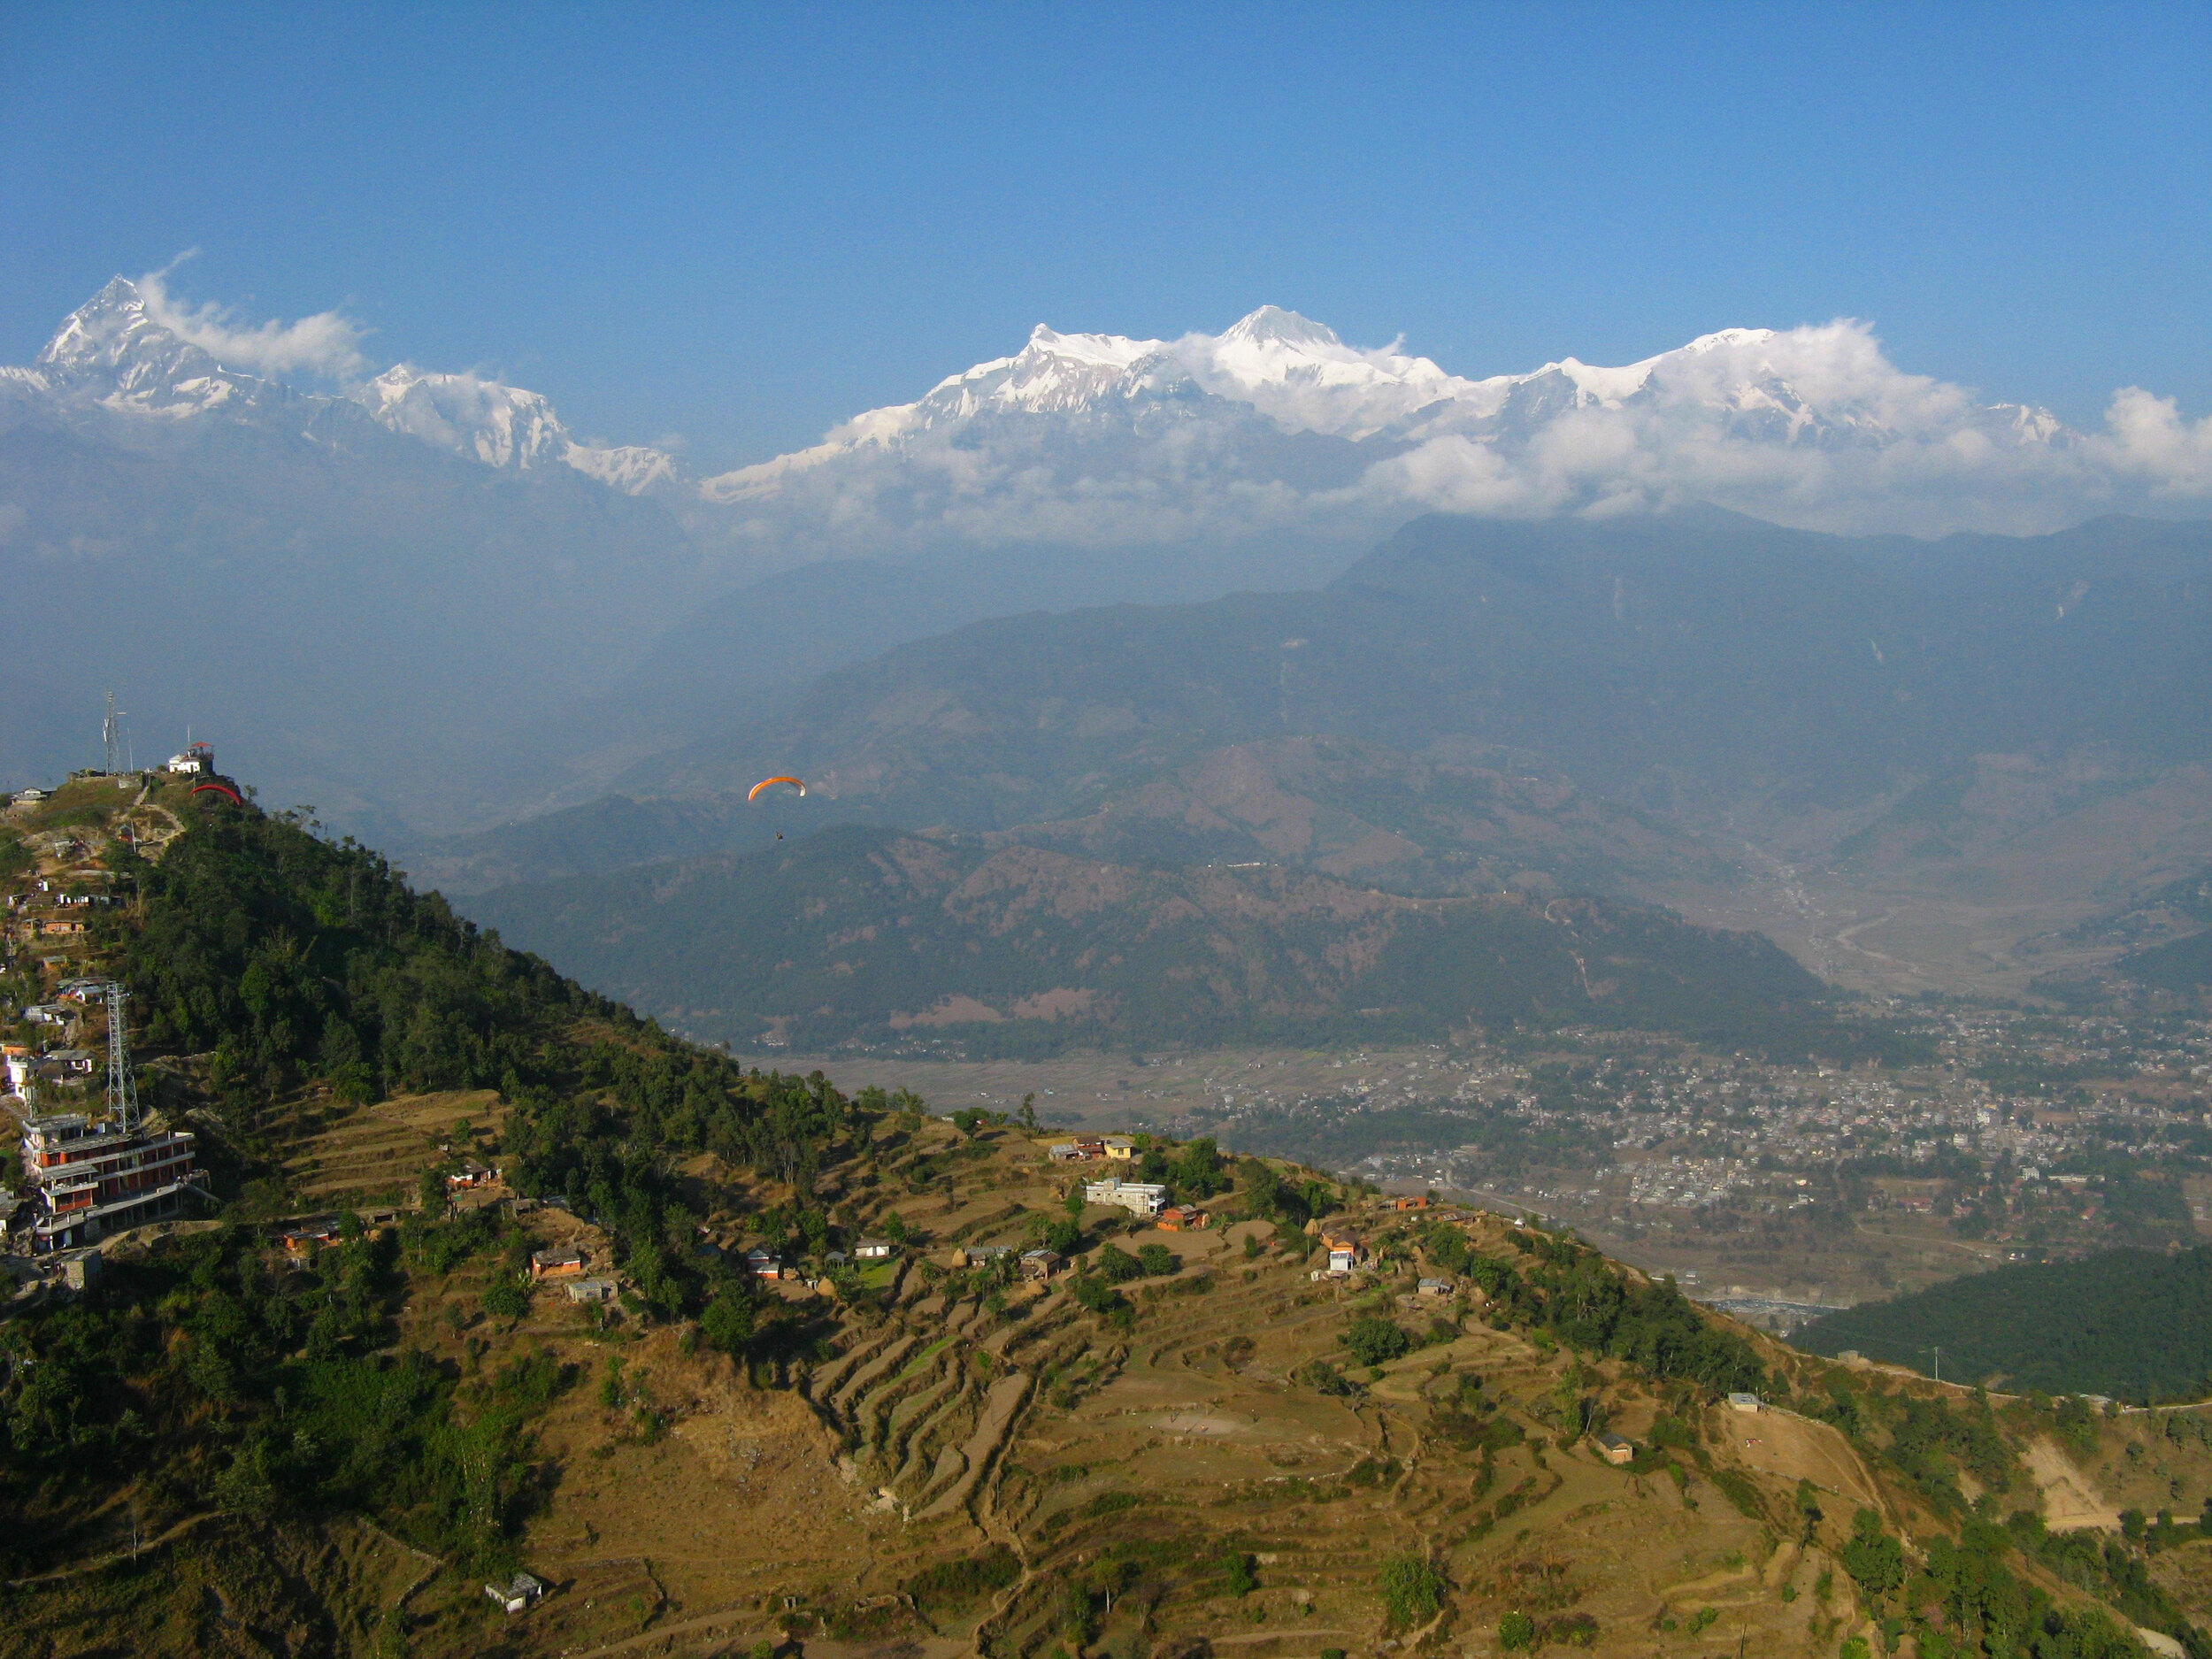 Saranknot, Nepal 2008